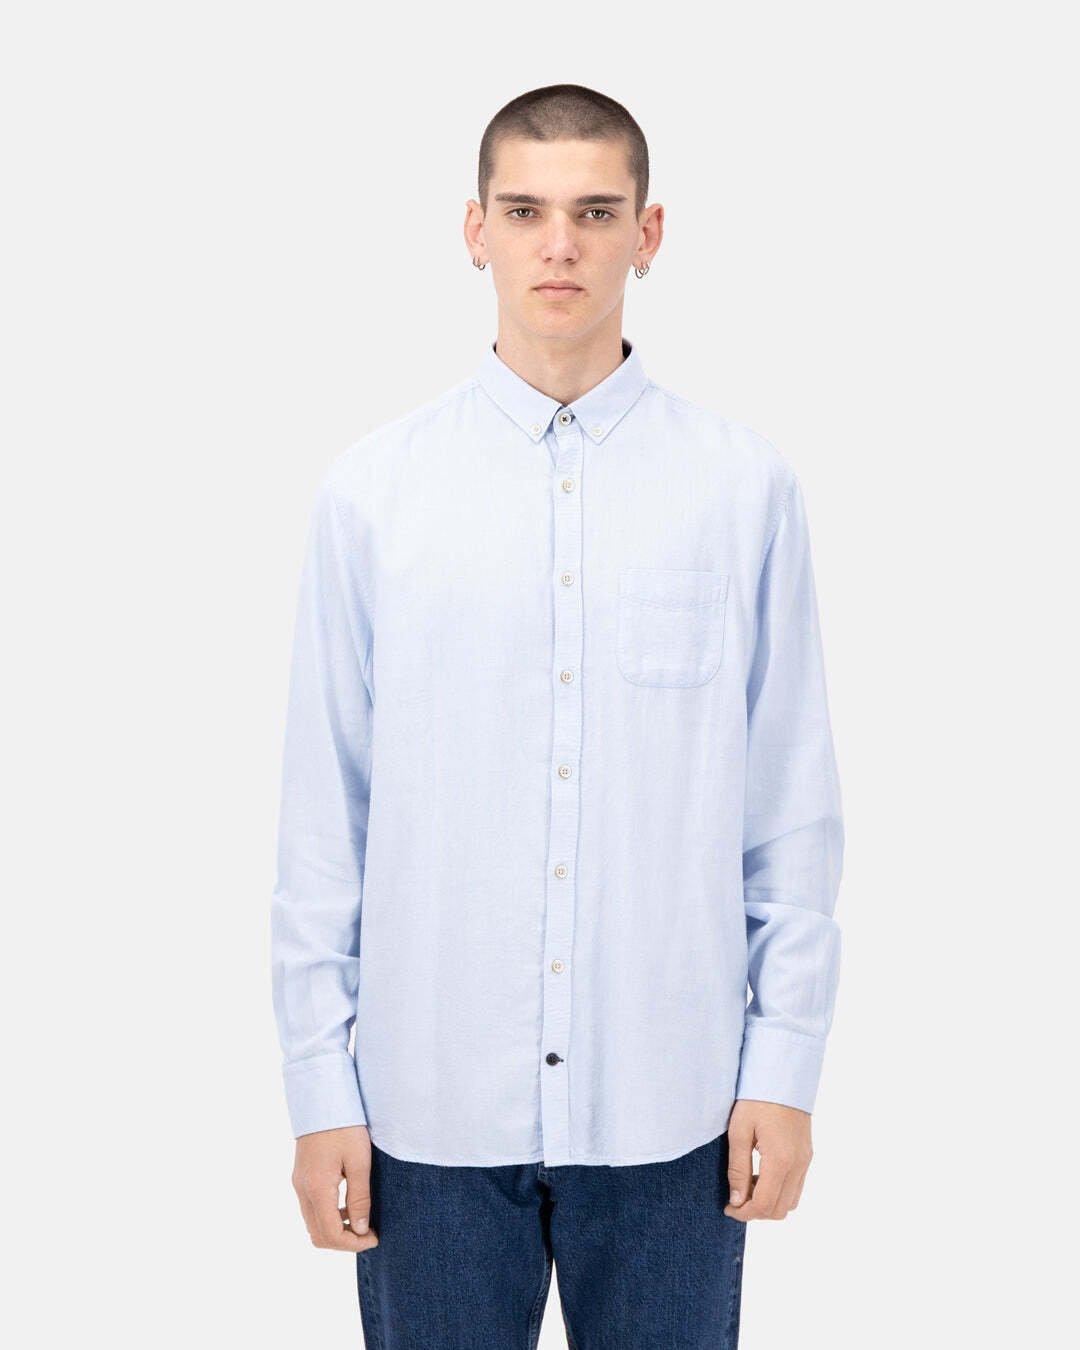 Hemden Shirt-brushed Twill Herren Hellblau L von Colours & Sons